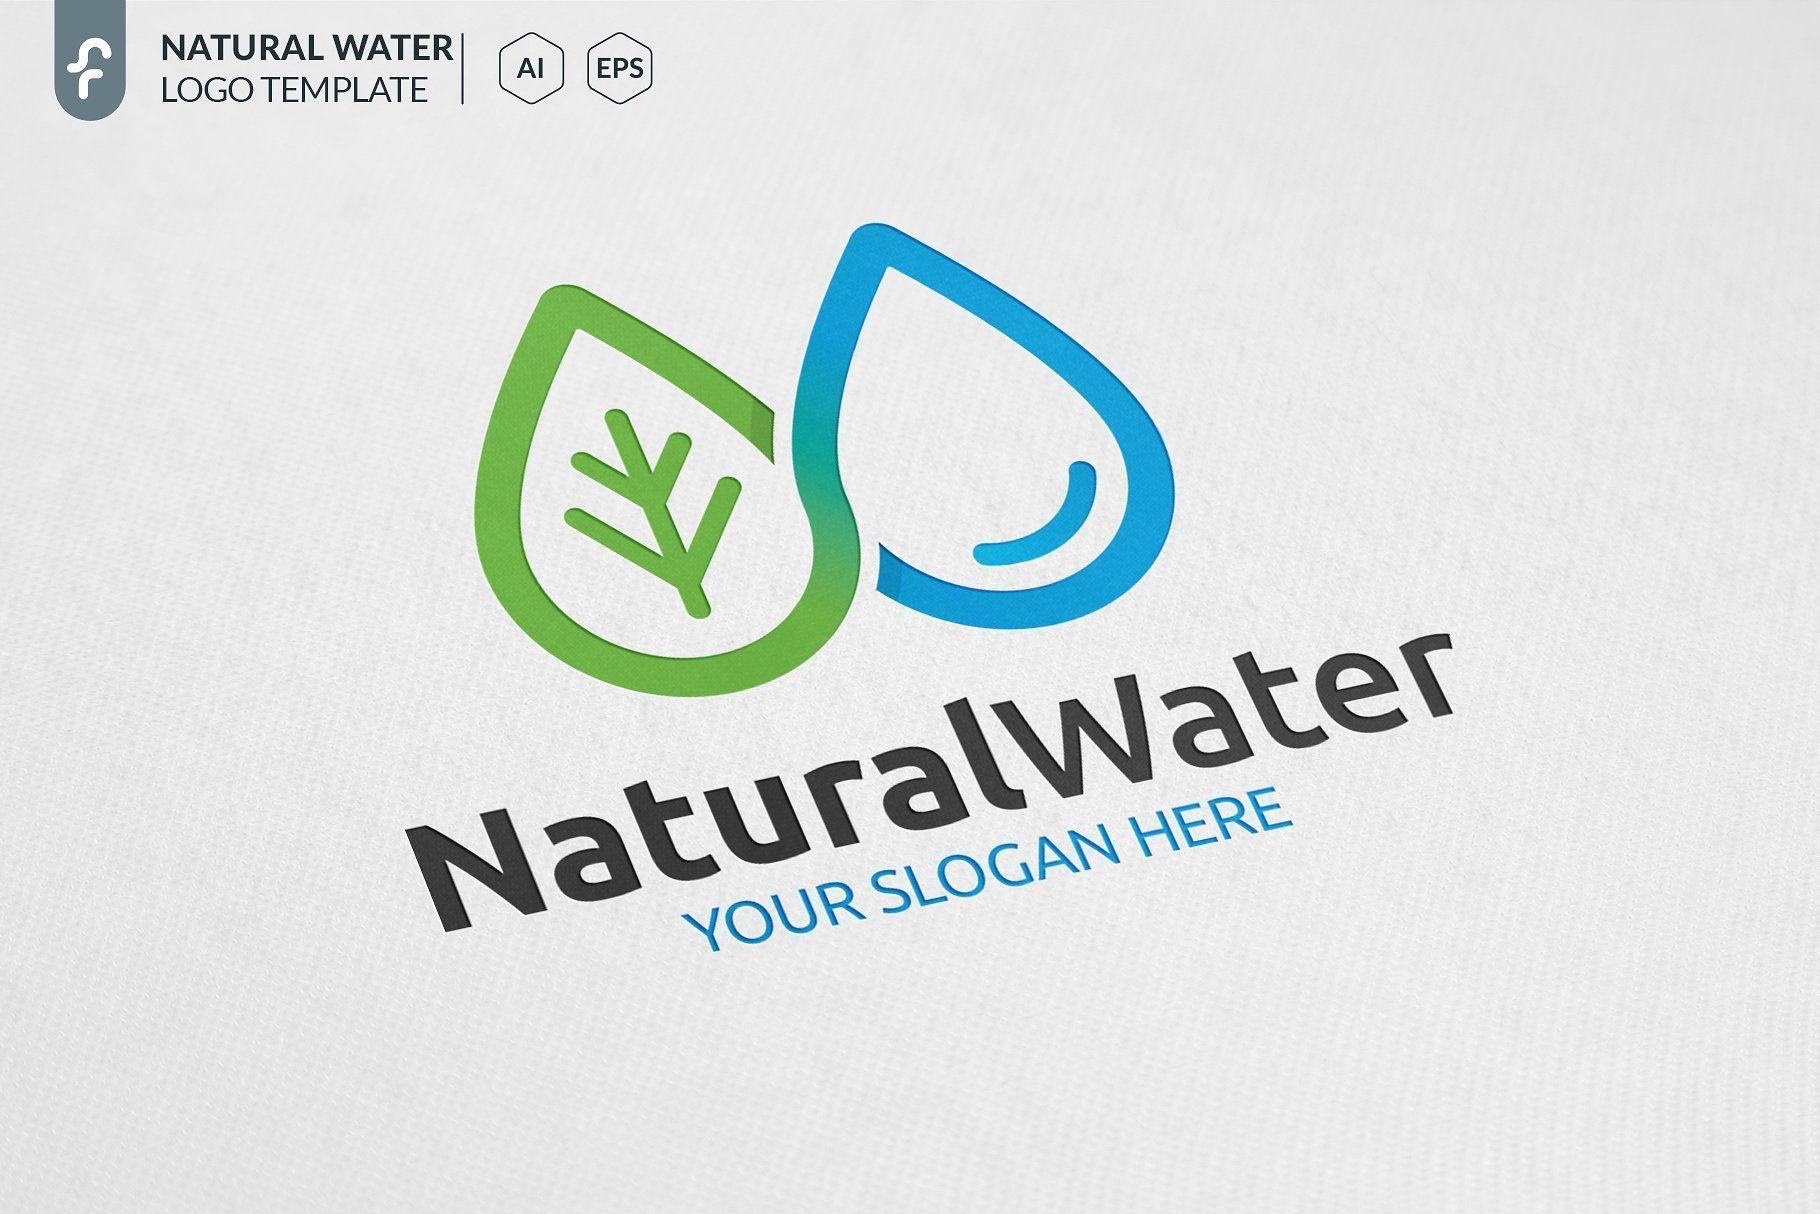 Modern Water Logo - Natural Water Logo Design #logo #design #natural #water #eco #health ...